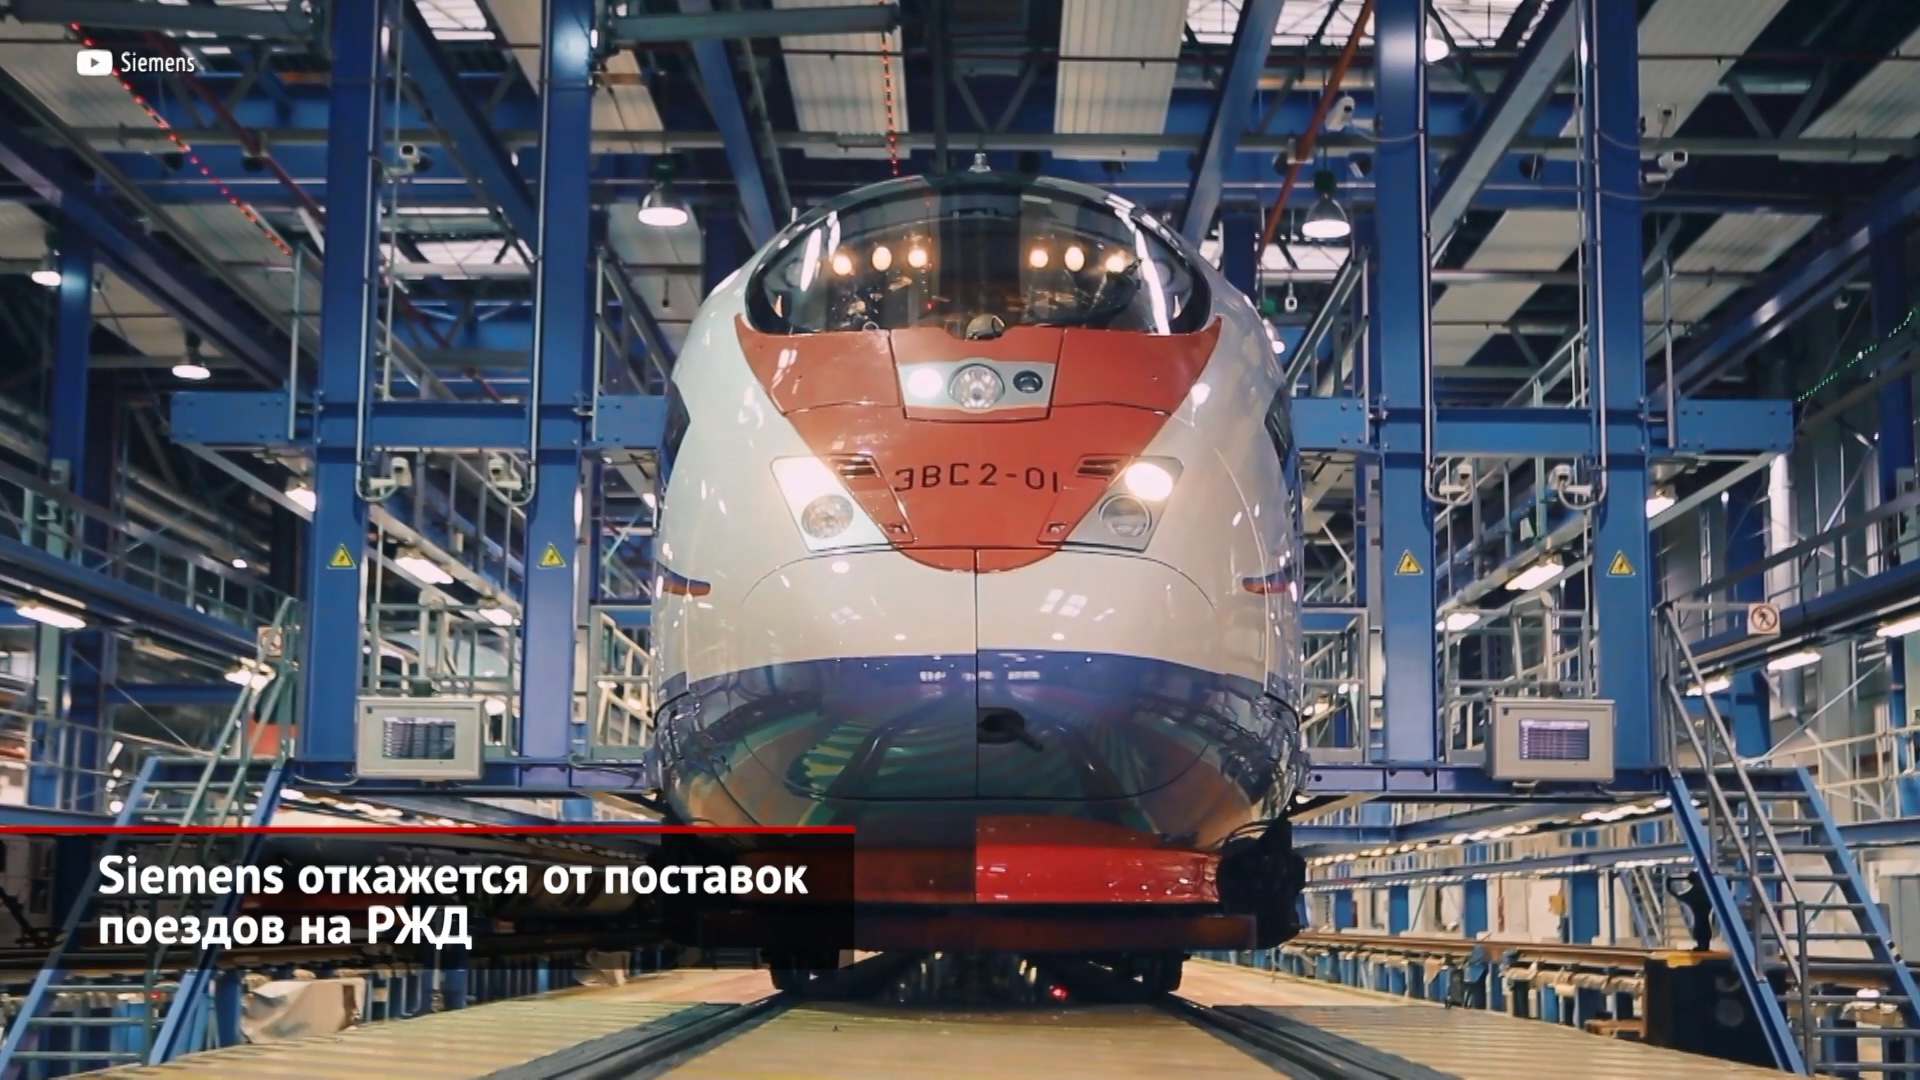 Siemens откажется от поставок поездов на РЖД | Новости с колёс №1997